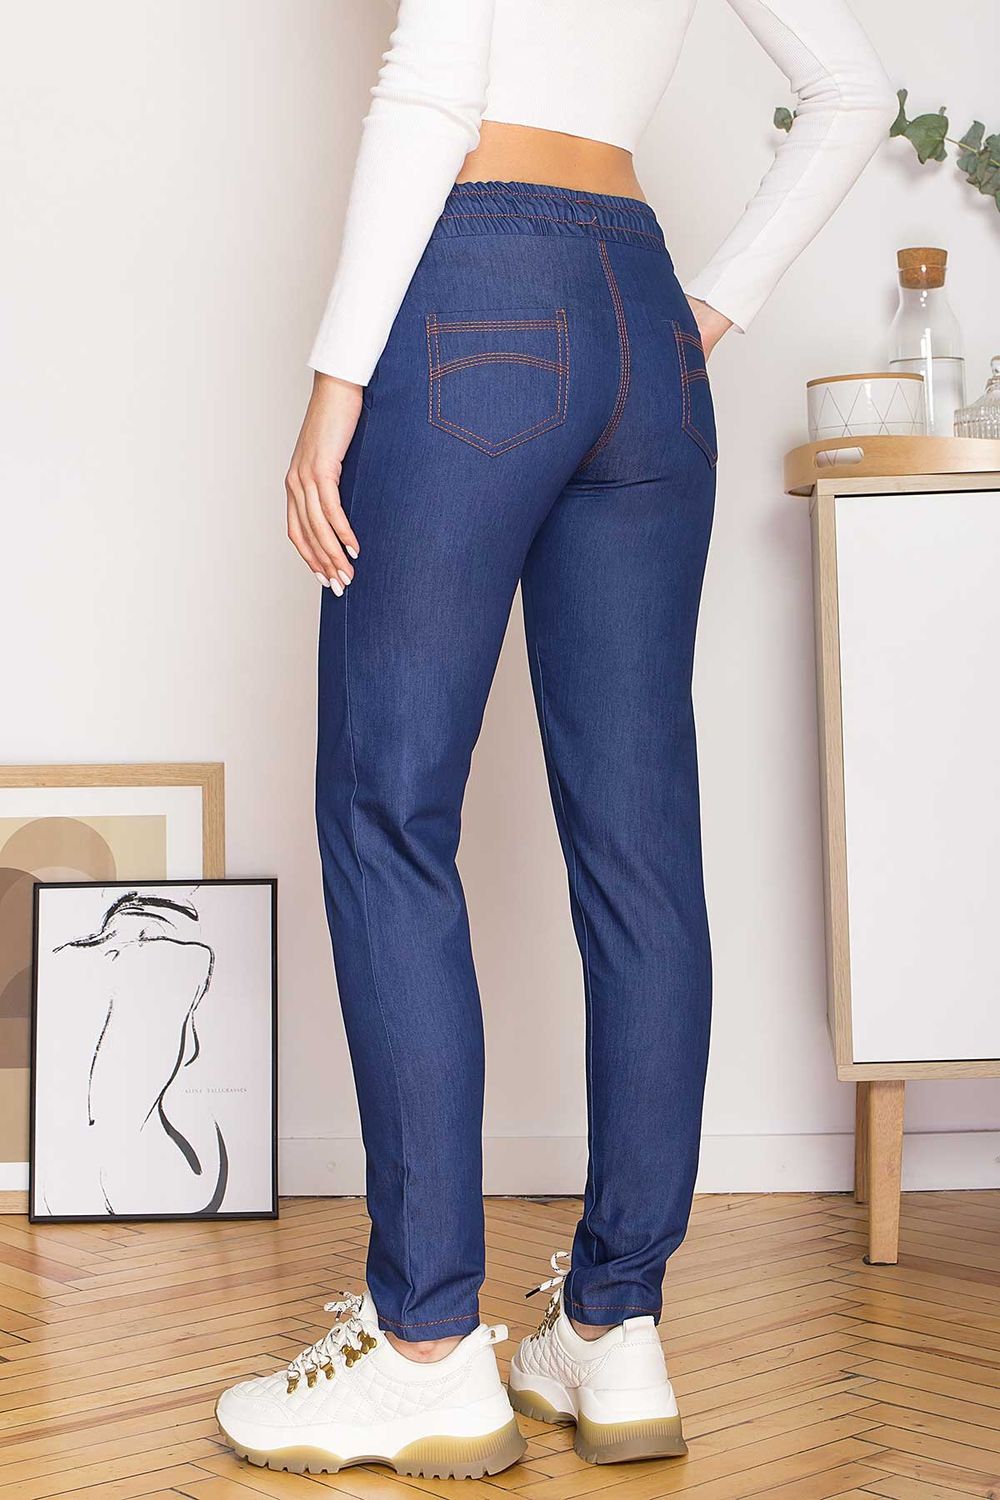 Жіночі джинсові штани на гумці - фото